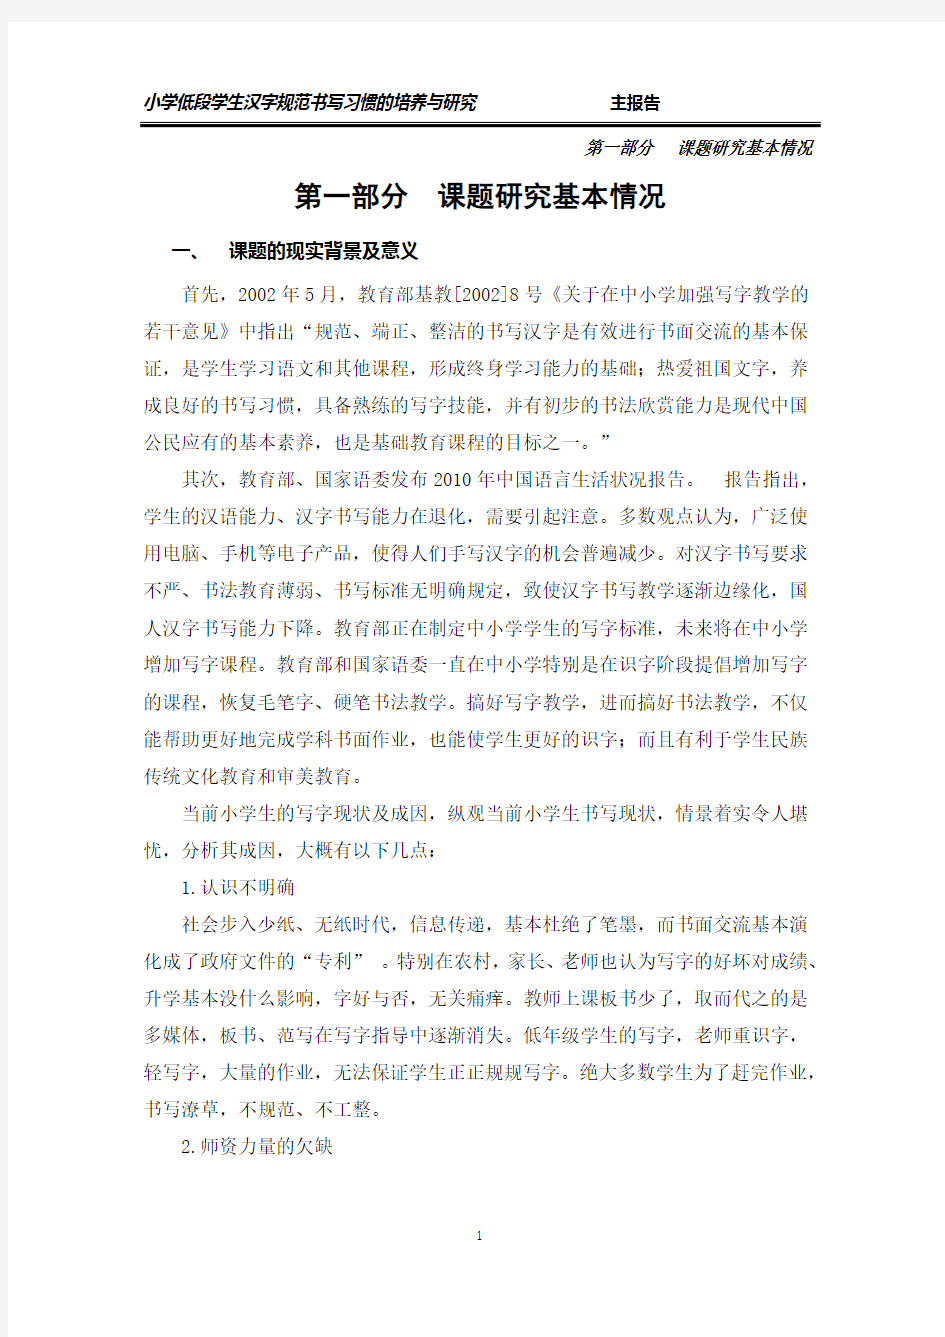 小学低段学生汉字规范书写习惯结题报告(第一部分)